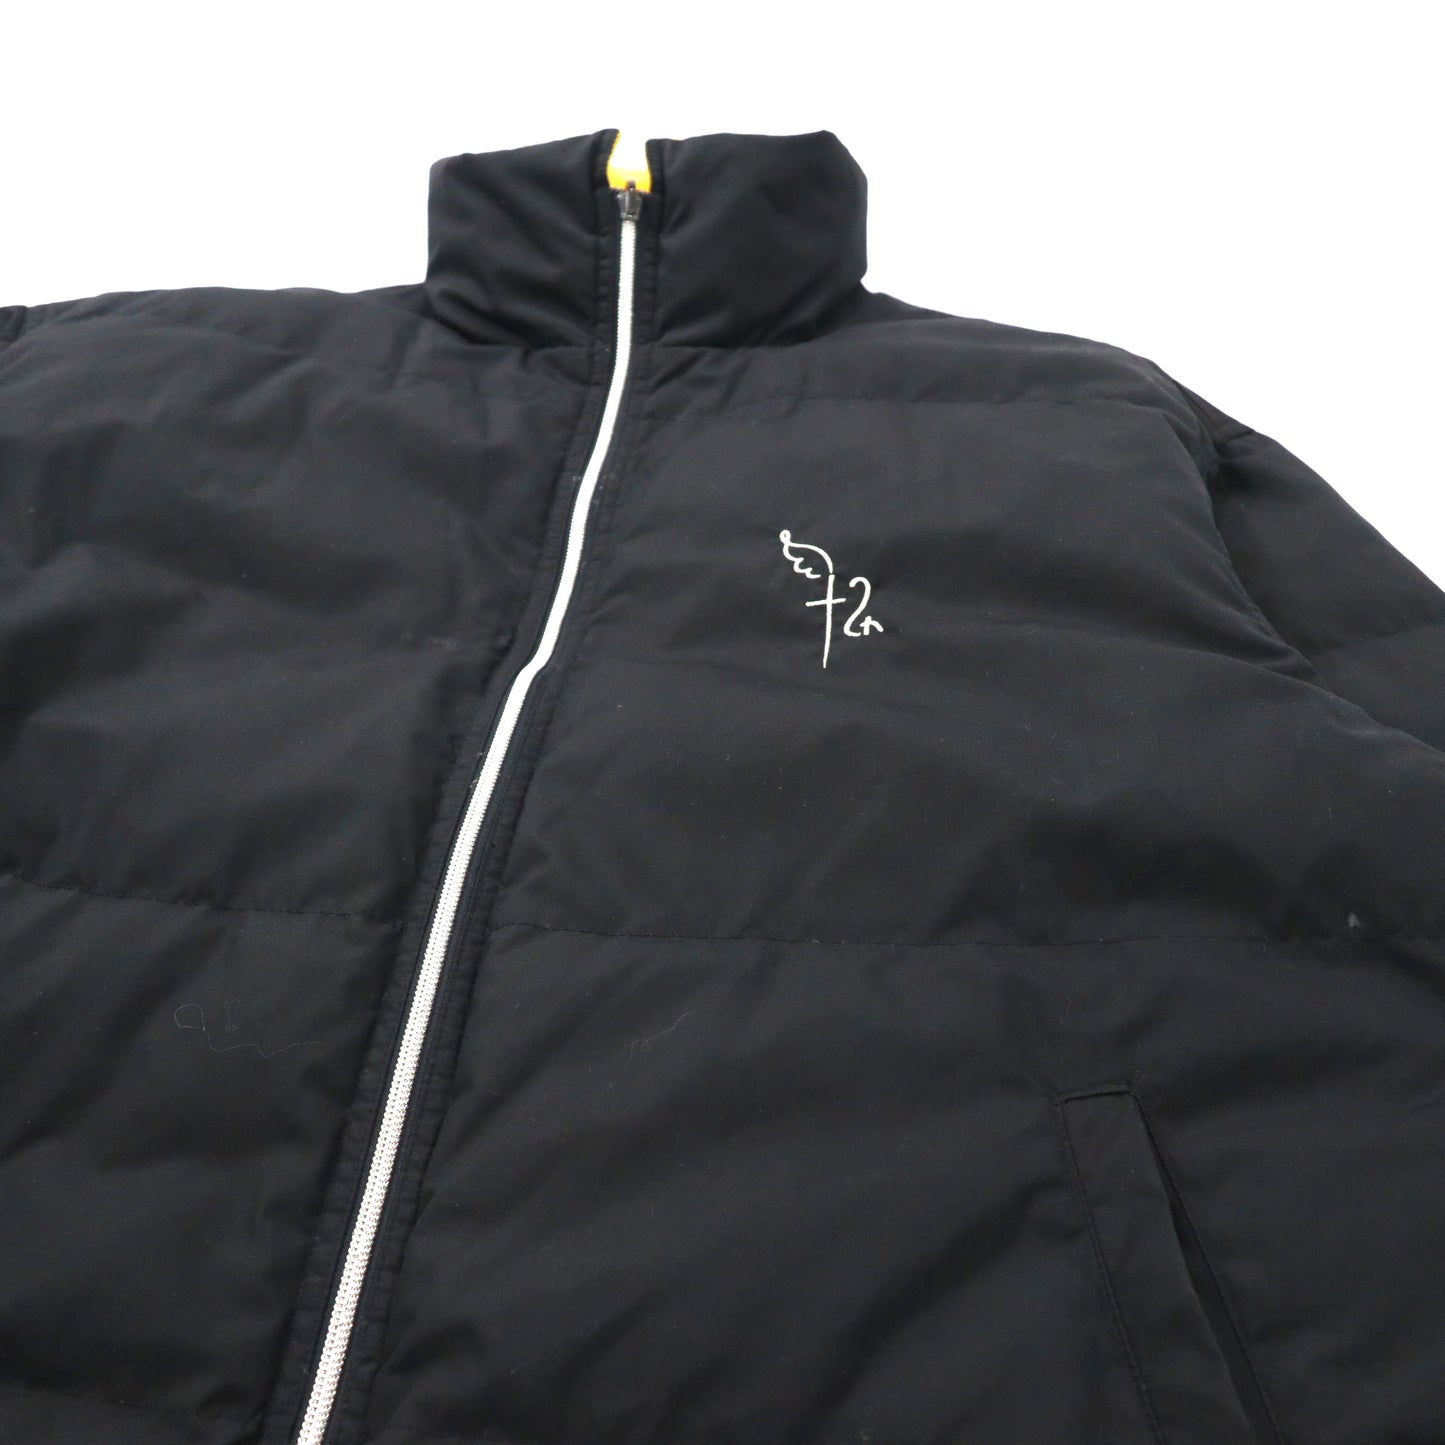 Castelbajac sport リバーシブル ダウンジャケット フリースジャケット 4 ブラック イエロー ポリエステル ビッグサイズ 90年代